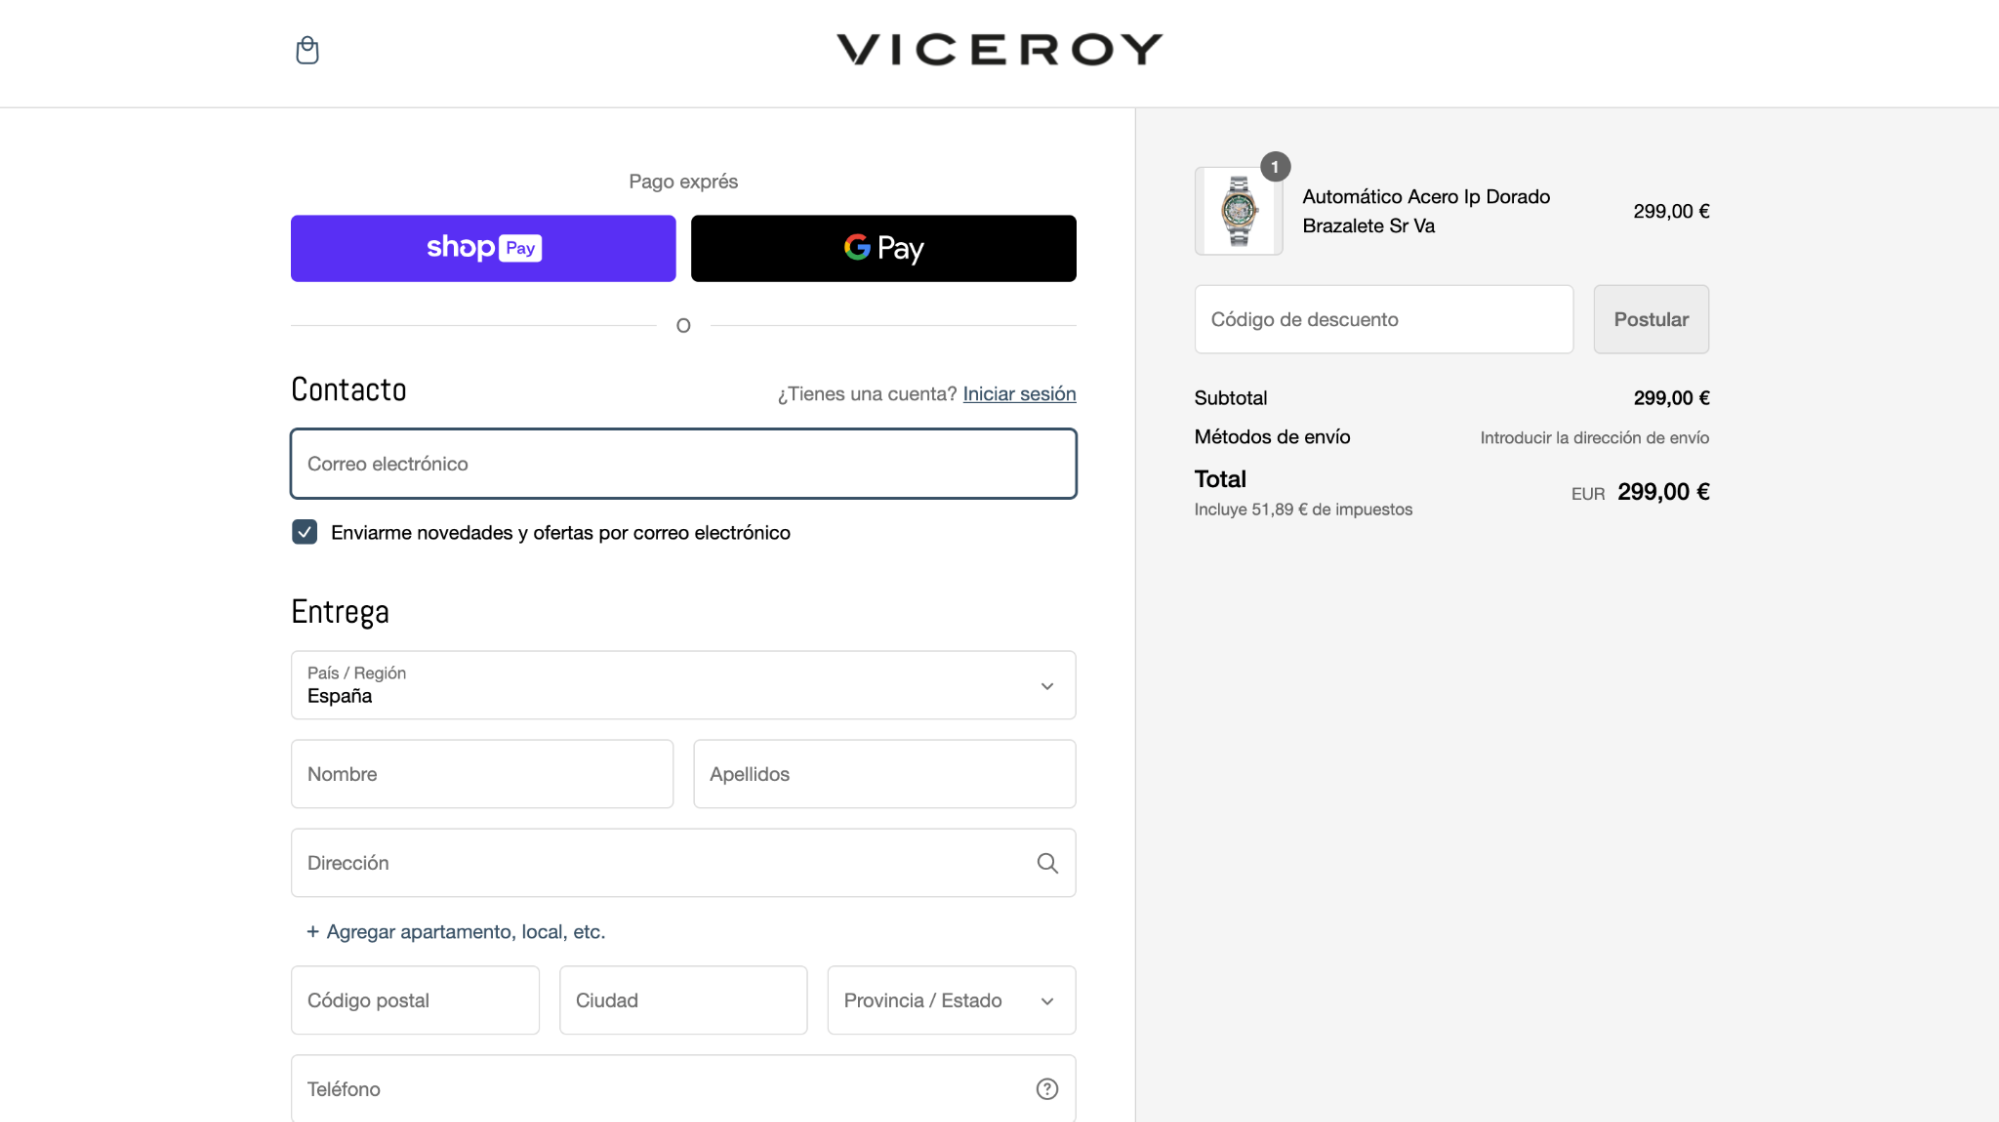 Imagen 3: Usar código promocional en Viceroy